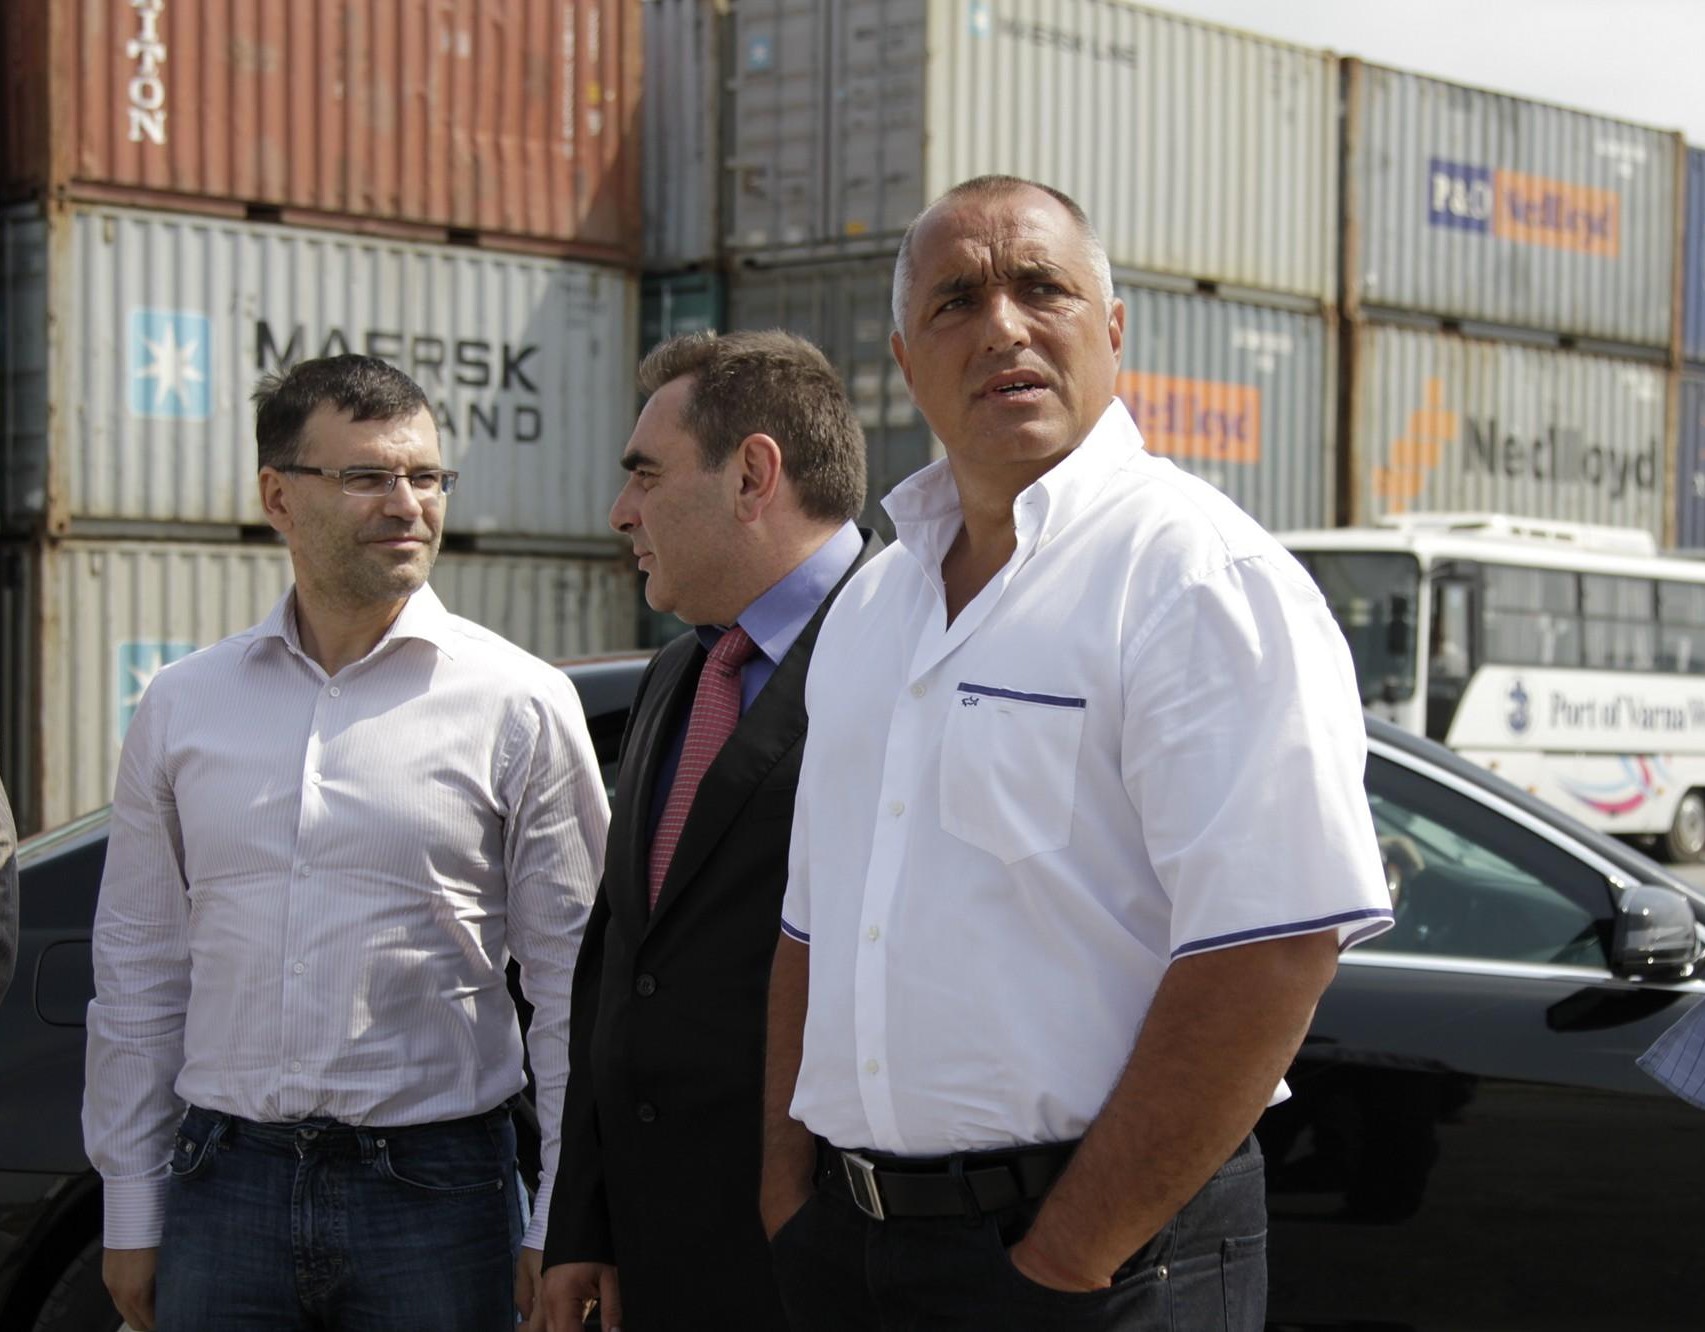 Борисов: Развитието на пристанищата ни е подтискано умишлено през последните 20 години